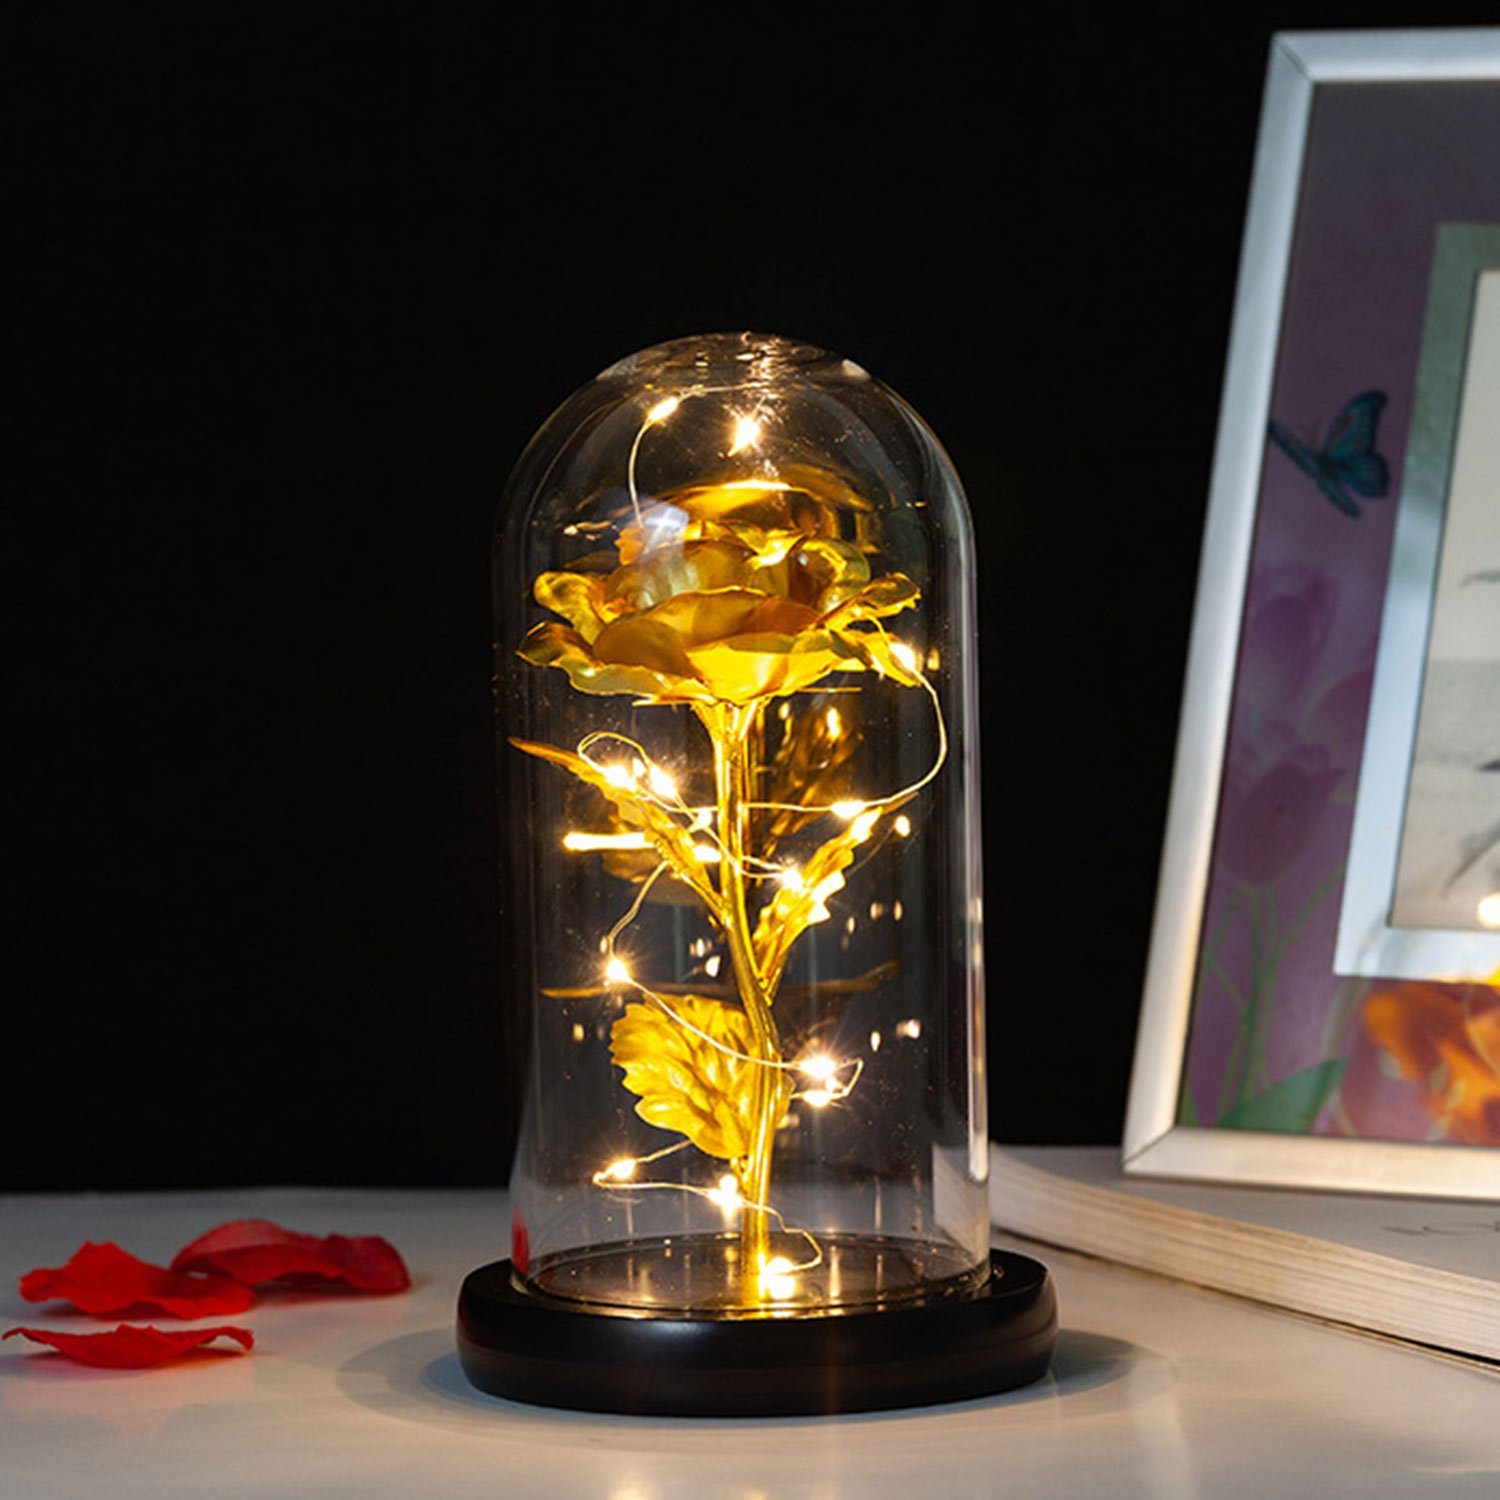 Kunstblume Konservierte Rose mit LED-Licht und Glasabdeckung, MAGICSHE